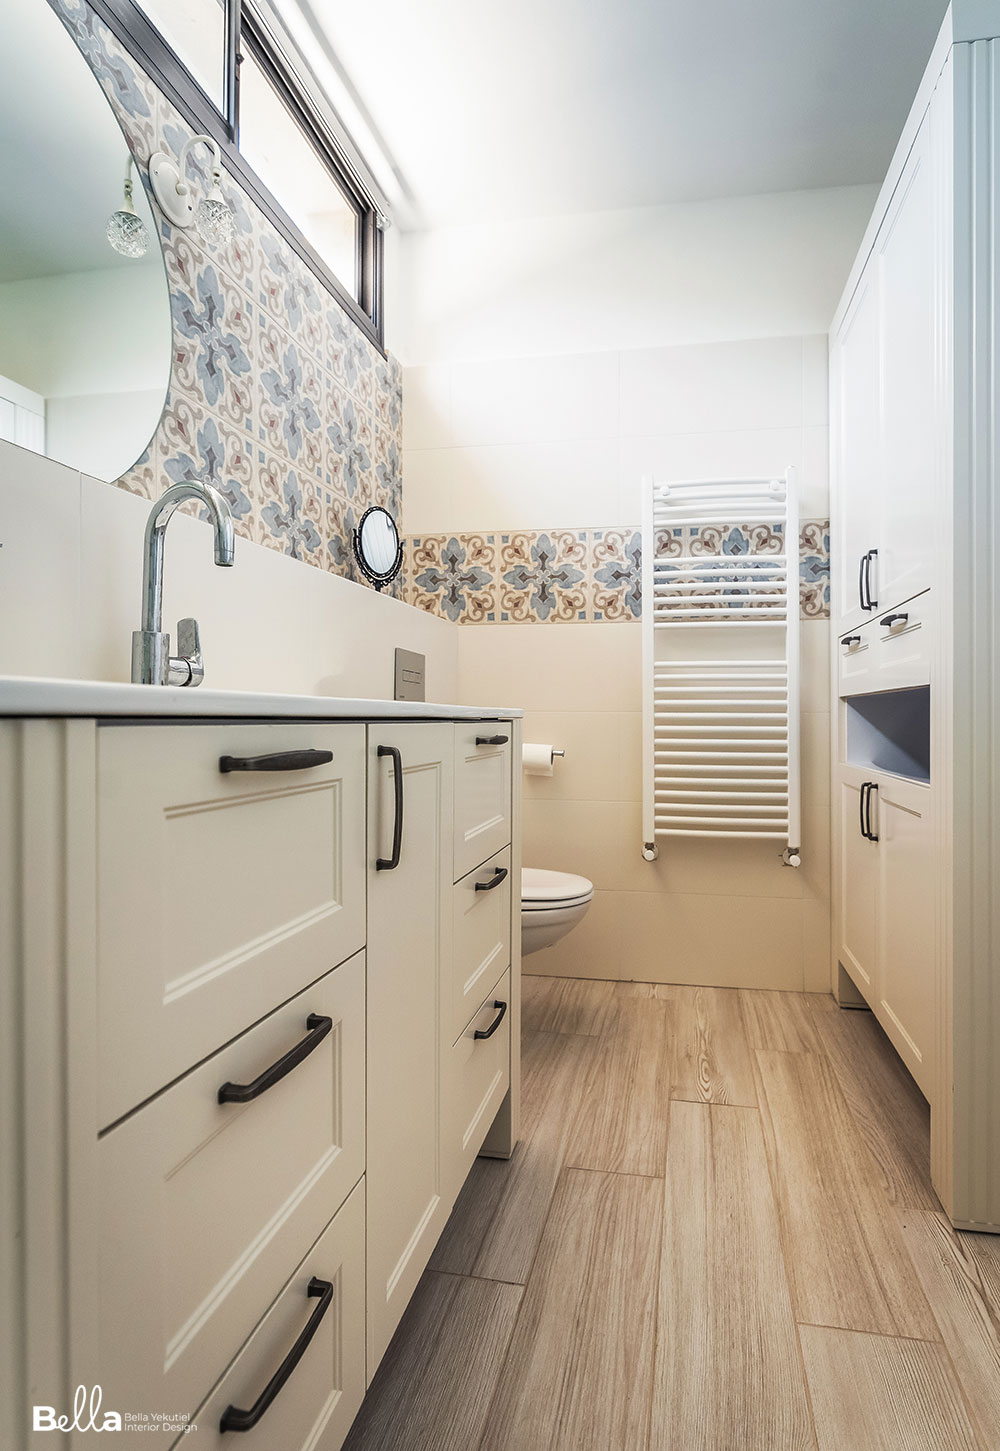 חדר שירותים עם ריצוף דמוי עץ וארון כפרי בצבע שמנת. חיפוי קירות אוריינטלי